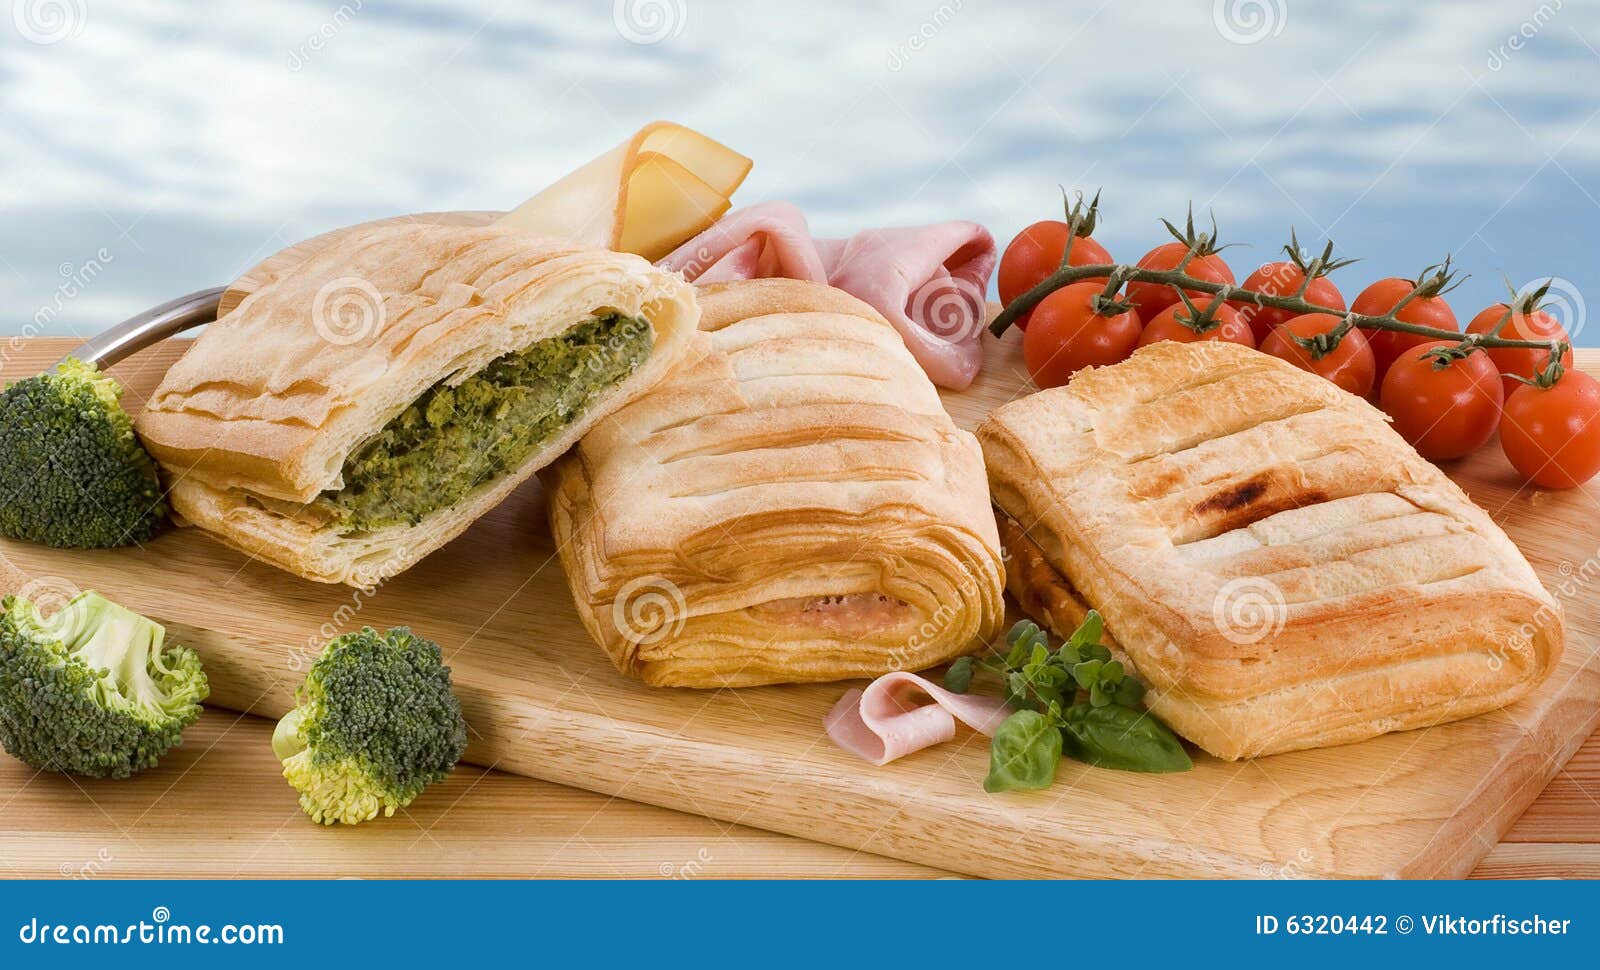 filo pastries